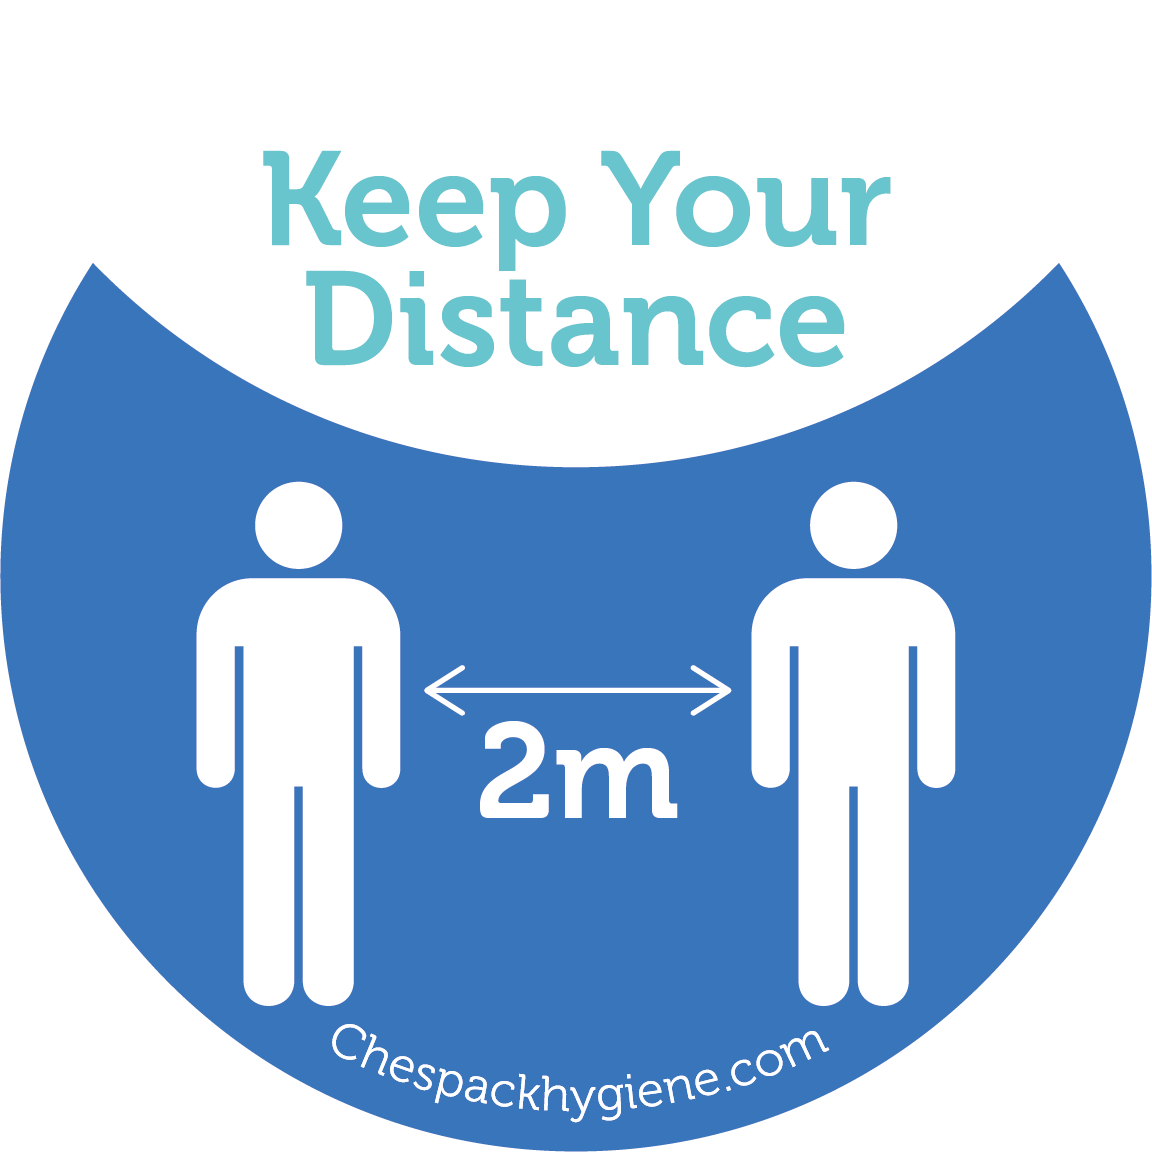 'Keep you Distance' - Blue